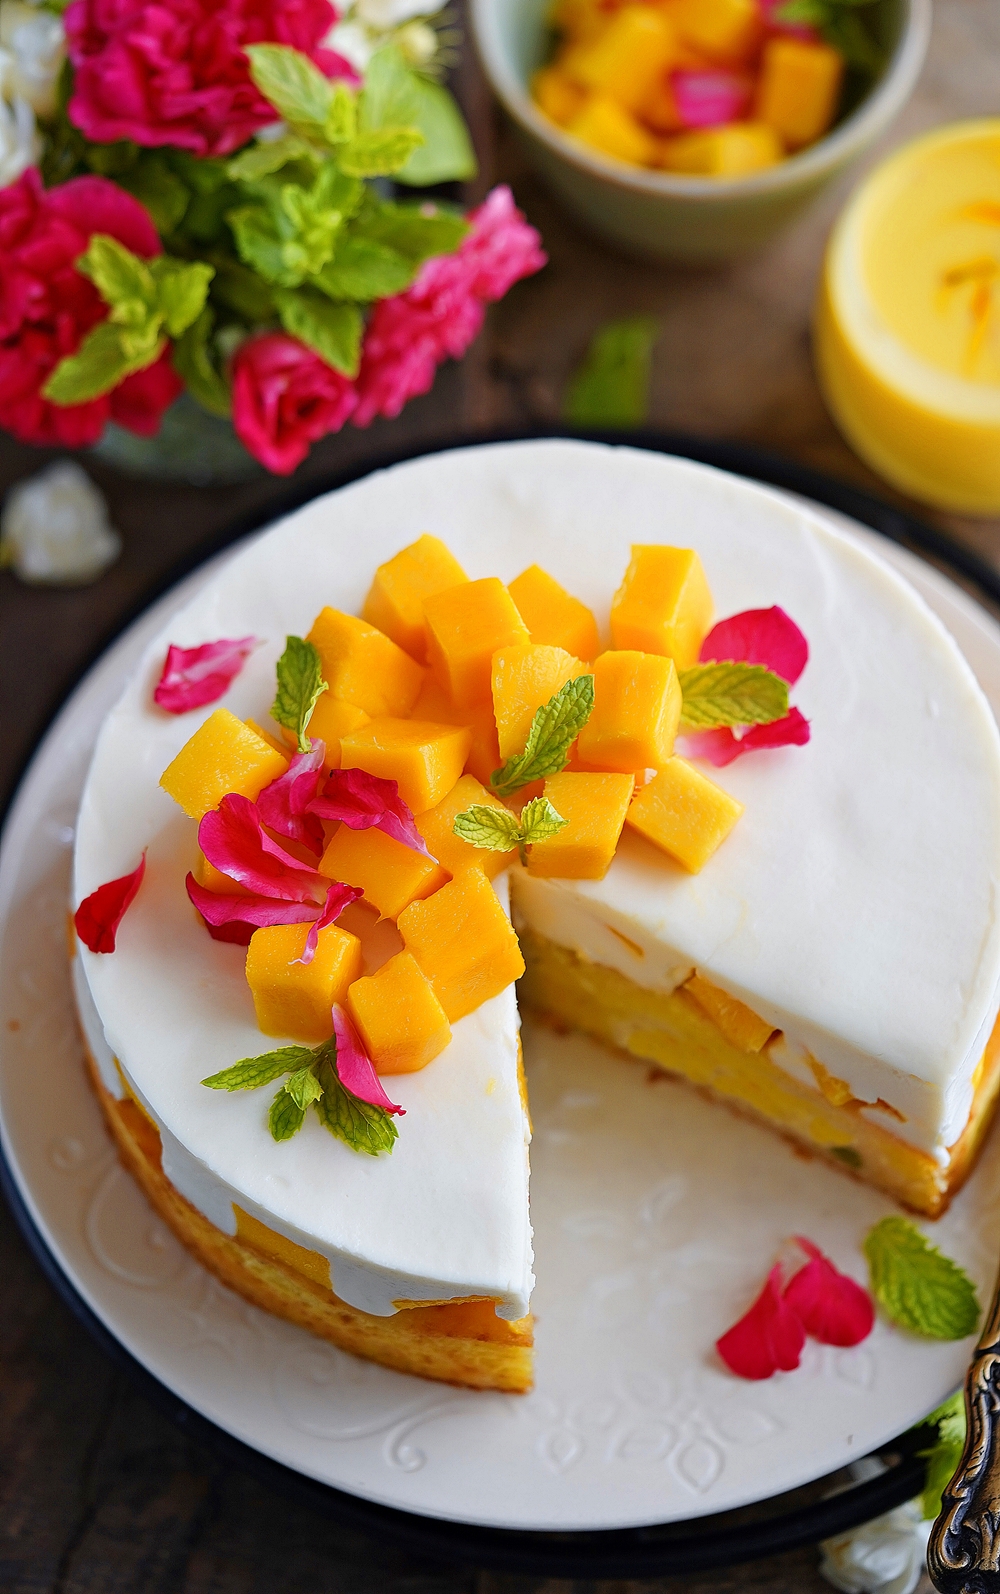 Eggless Mango Cake - Bake with Shivesh